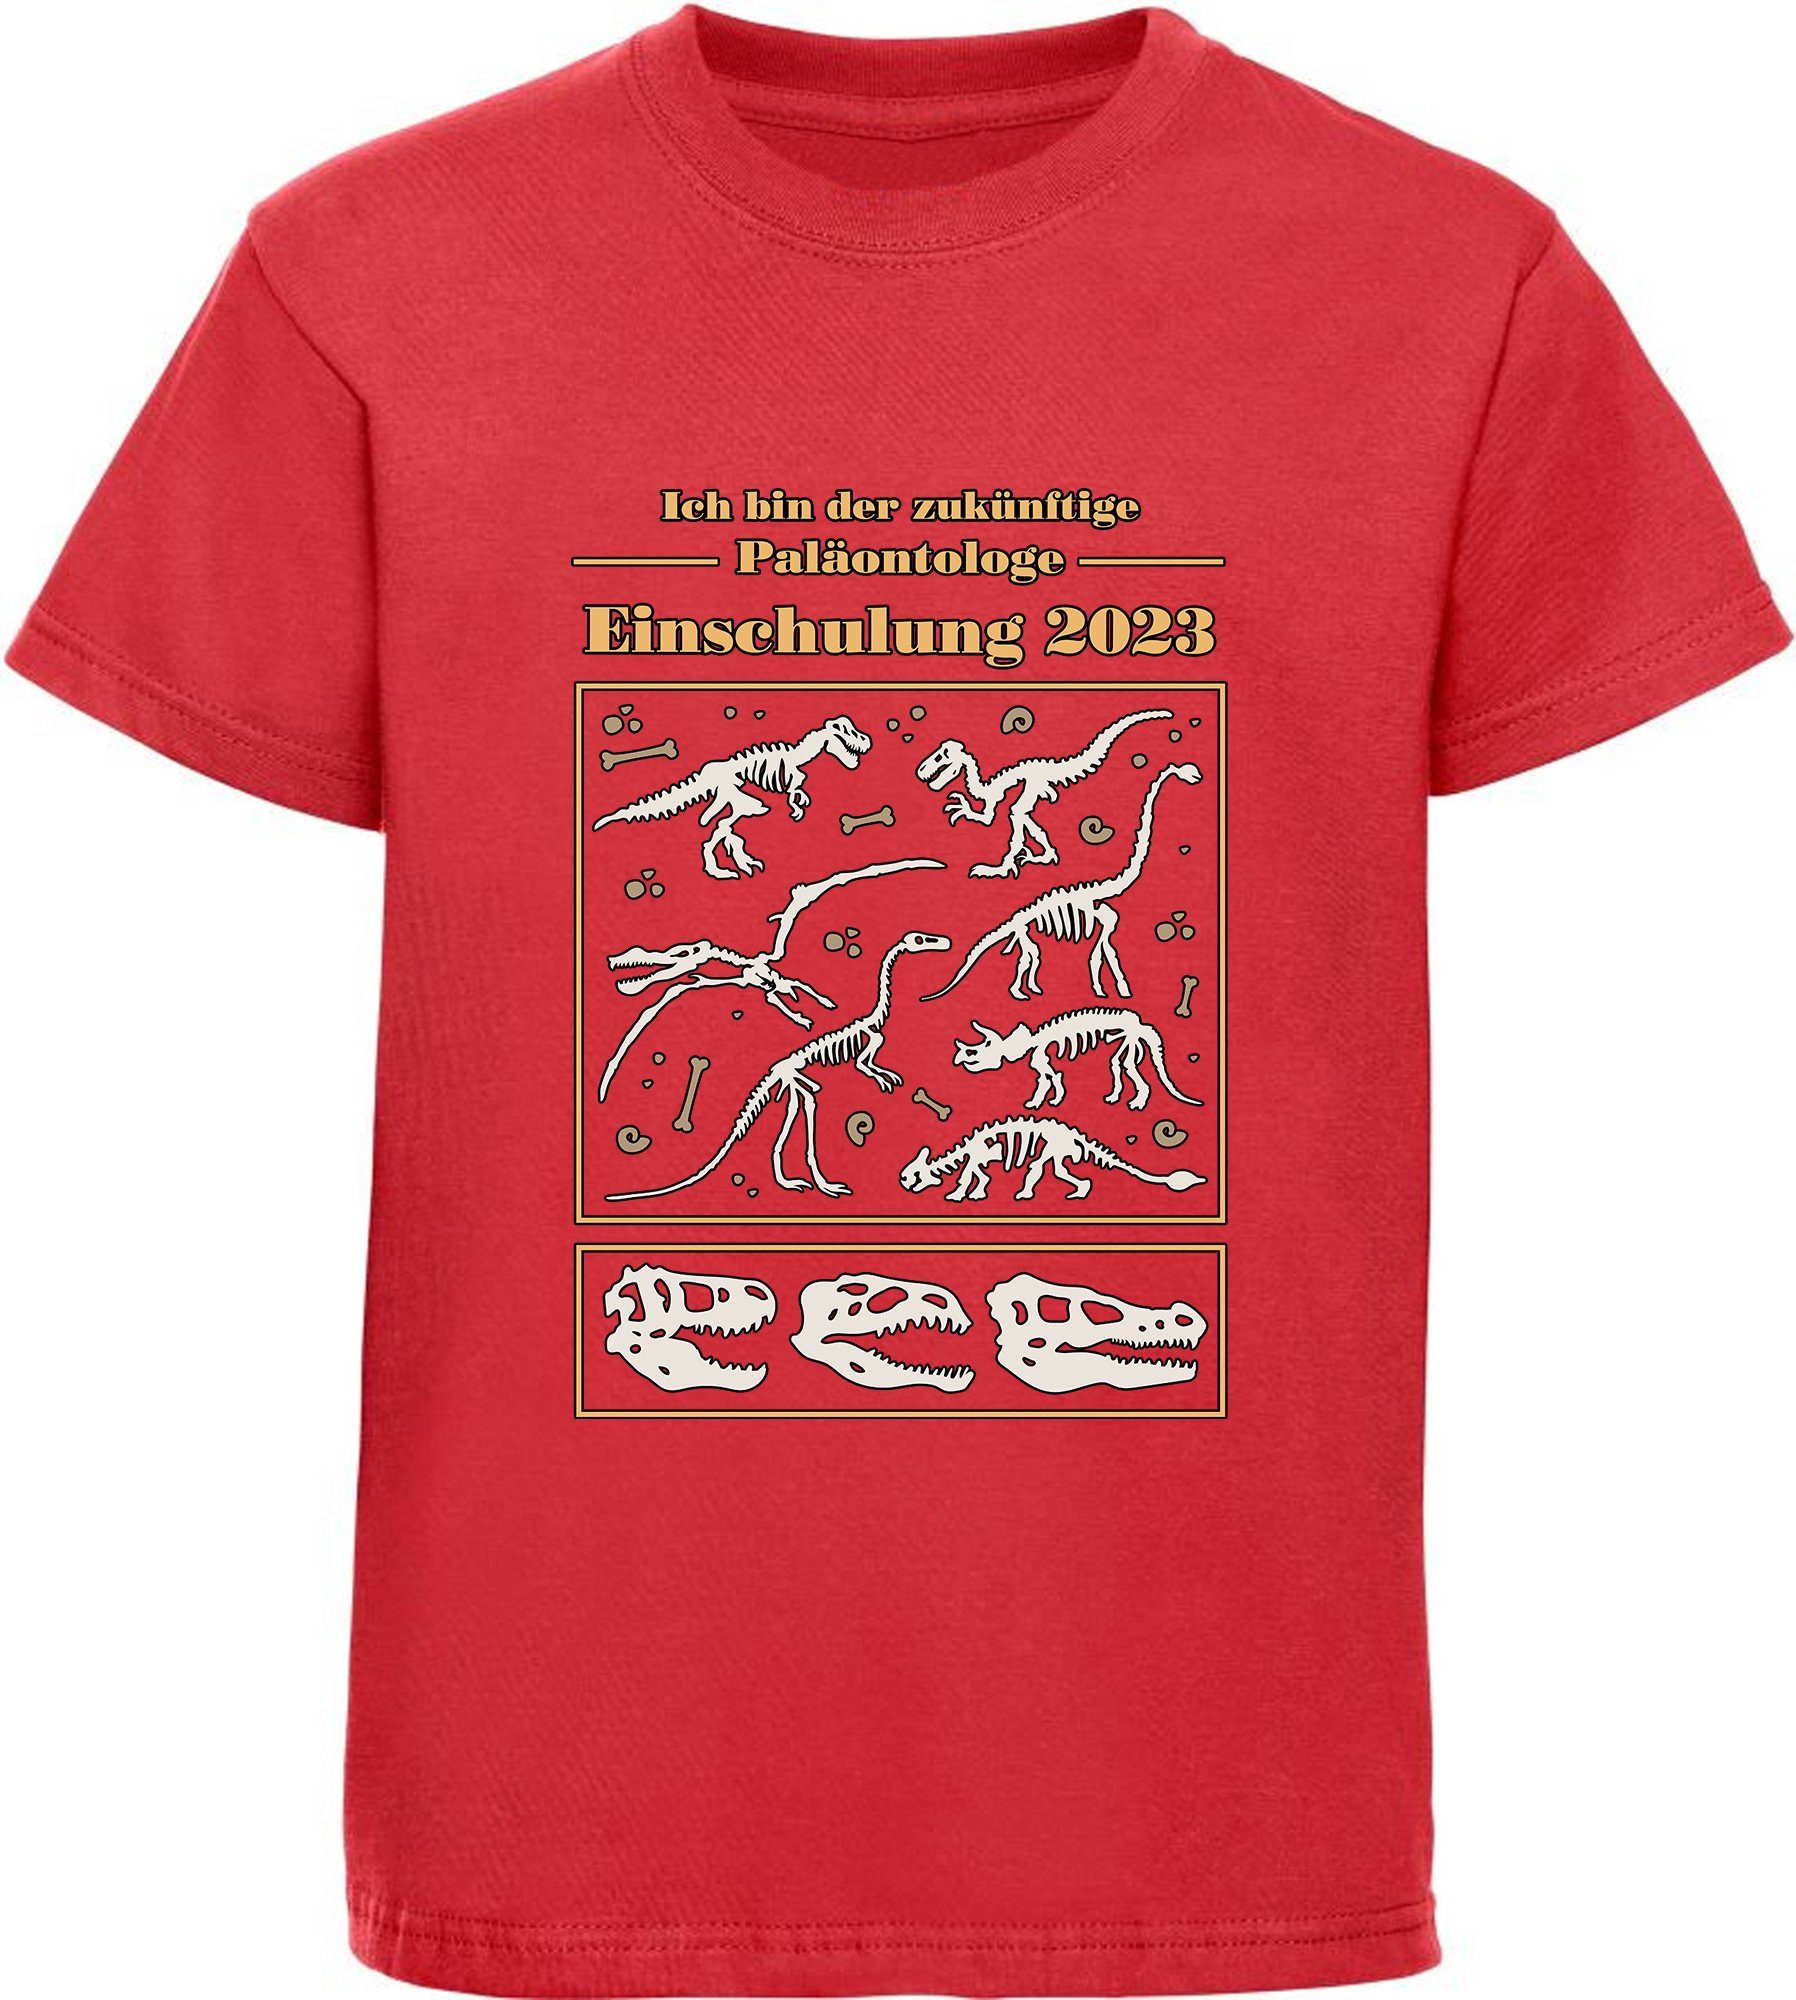 MyDesign24 Print-Shirt rot, bedrucktes Kinder Dino Einschulung T-Shirt 2023, i36 blau, Paläontologe mit Baumwollshirt schwarz, Skeletten weiß, zukünftige